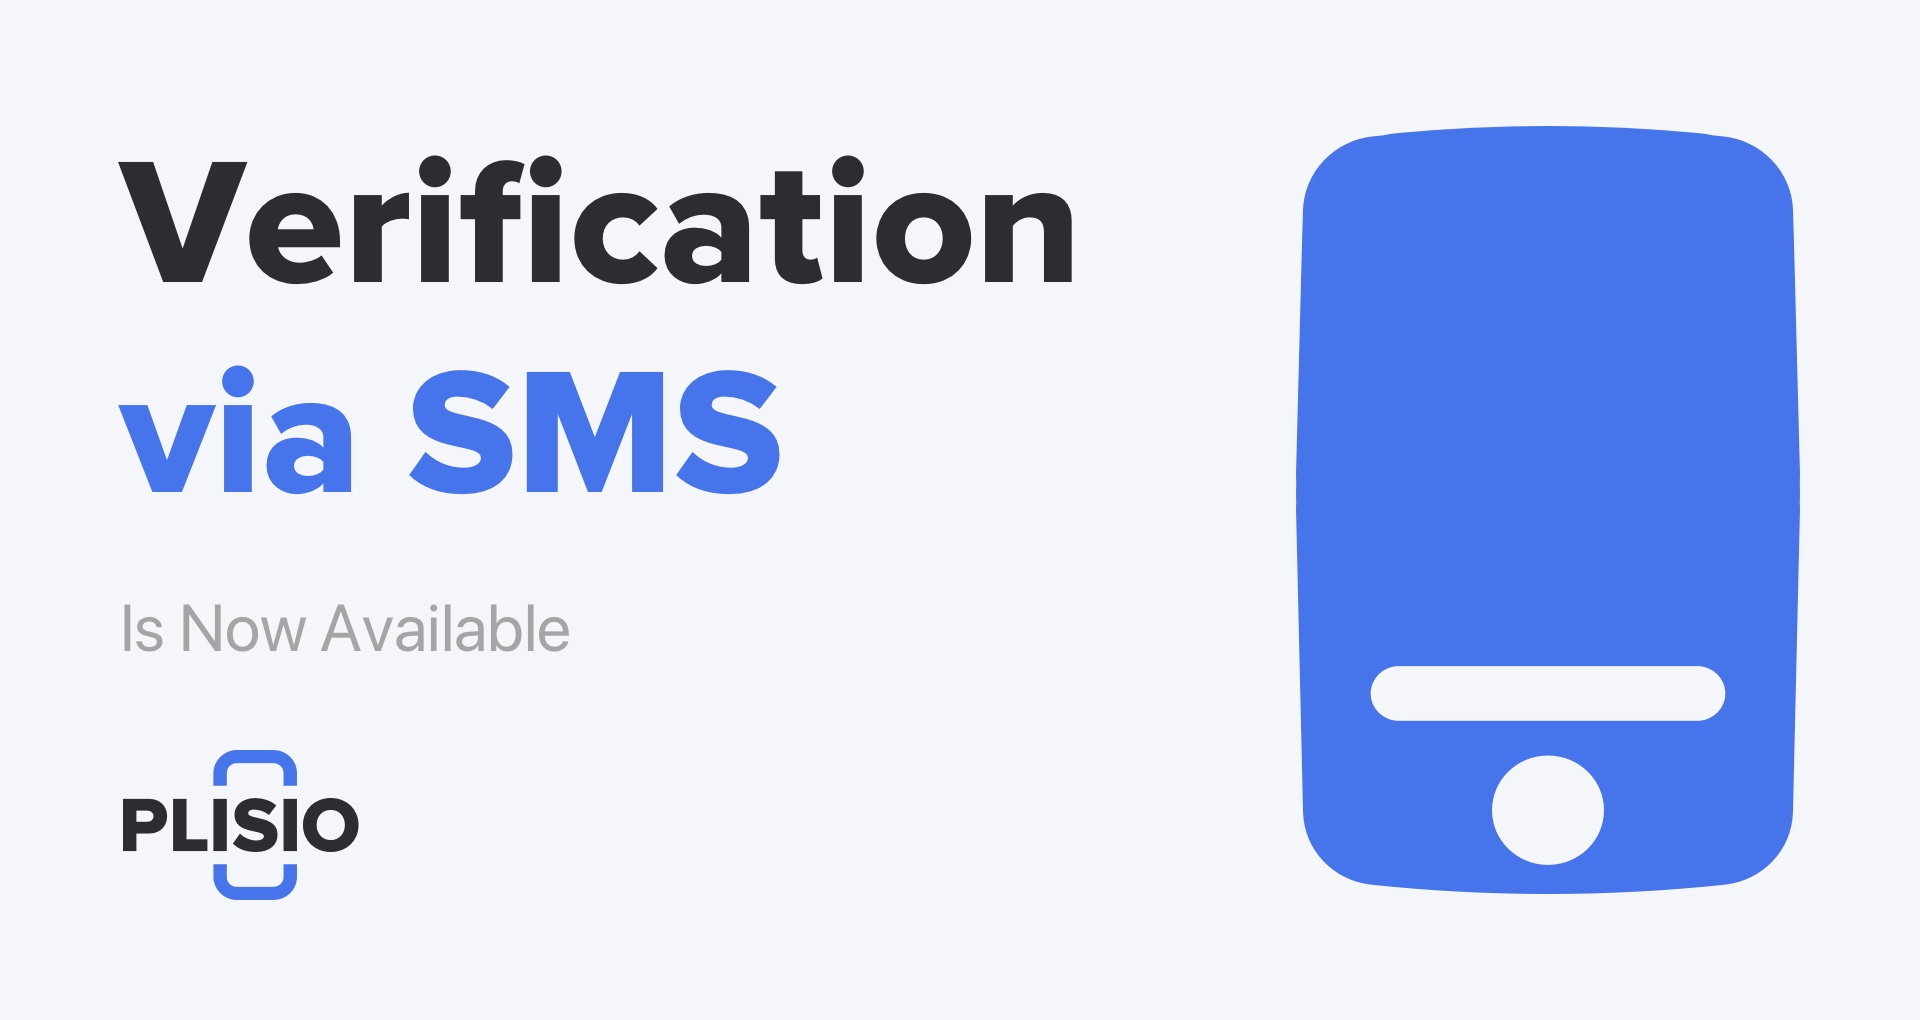 Die SMS-Verifizierung ist jetzt verfügbar. Aktualisieren Sie Ihre Sicherheitseinstellungen!